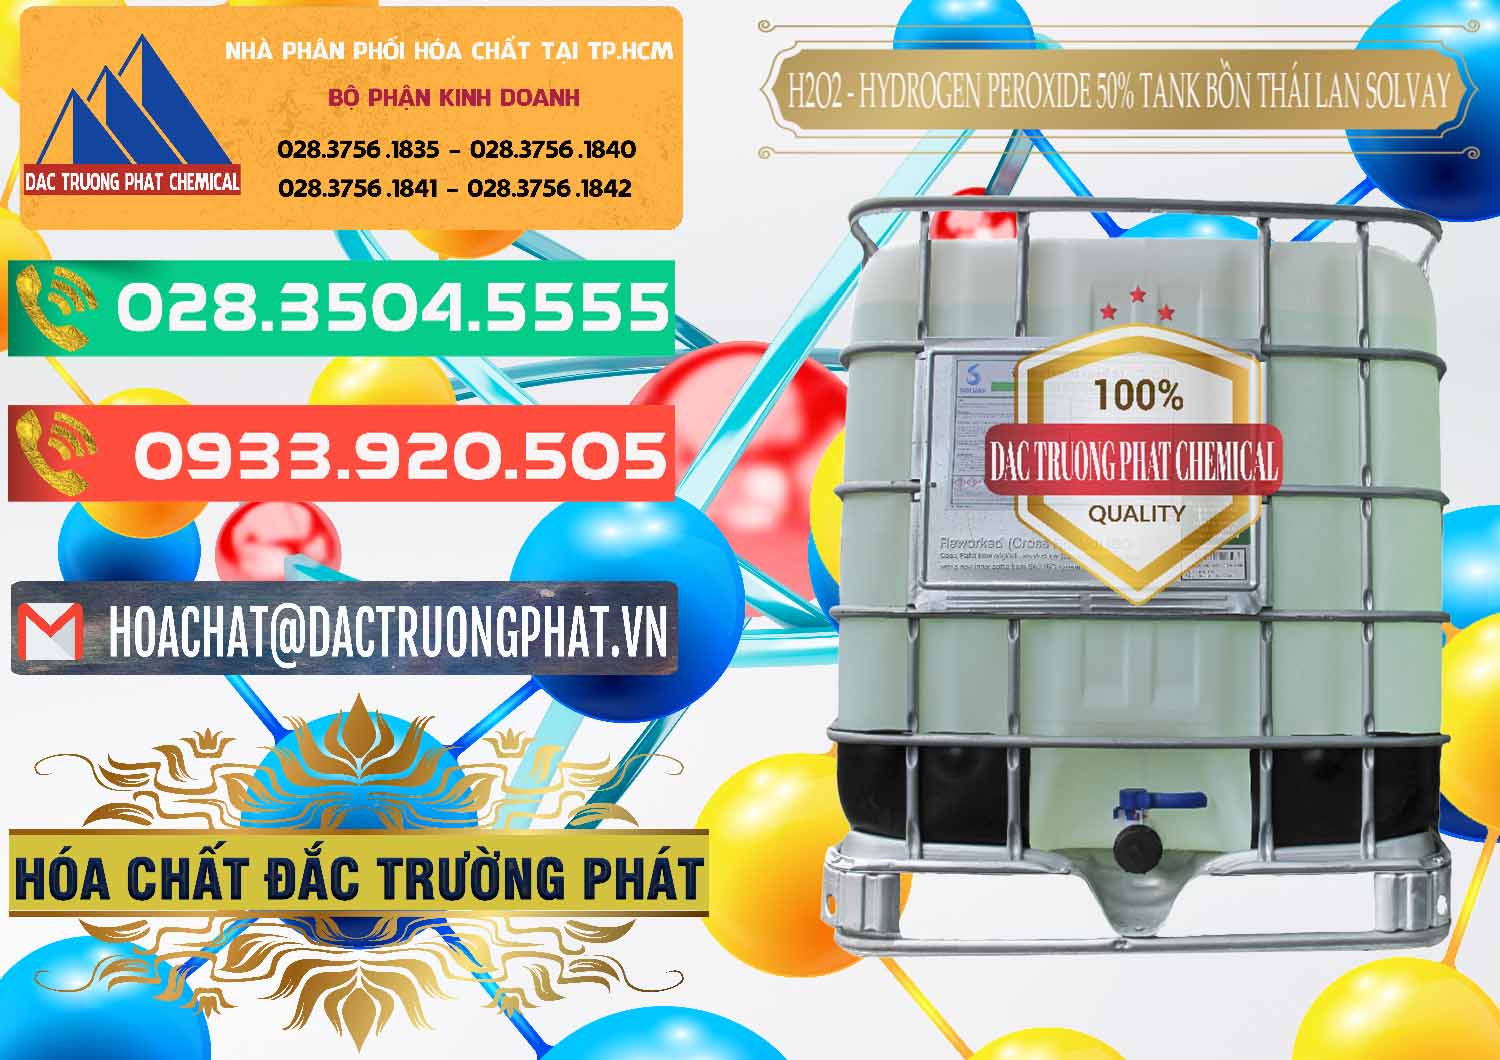 Cty chuyên cung ứng và bán H2O2 - Hydrogen Peroxide 50% Tank IBC Bồn Thái Lan Solvay - 0072 - Phân phối _ cung cấp hóa chất tại TP.HCM - congtyhoachat.com.vn